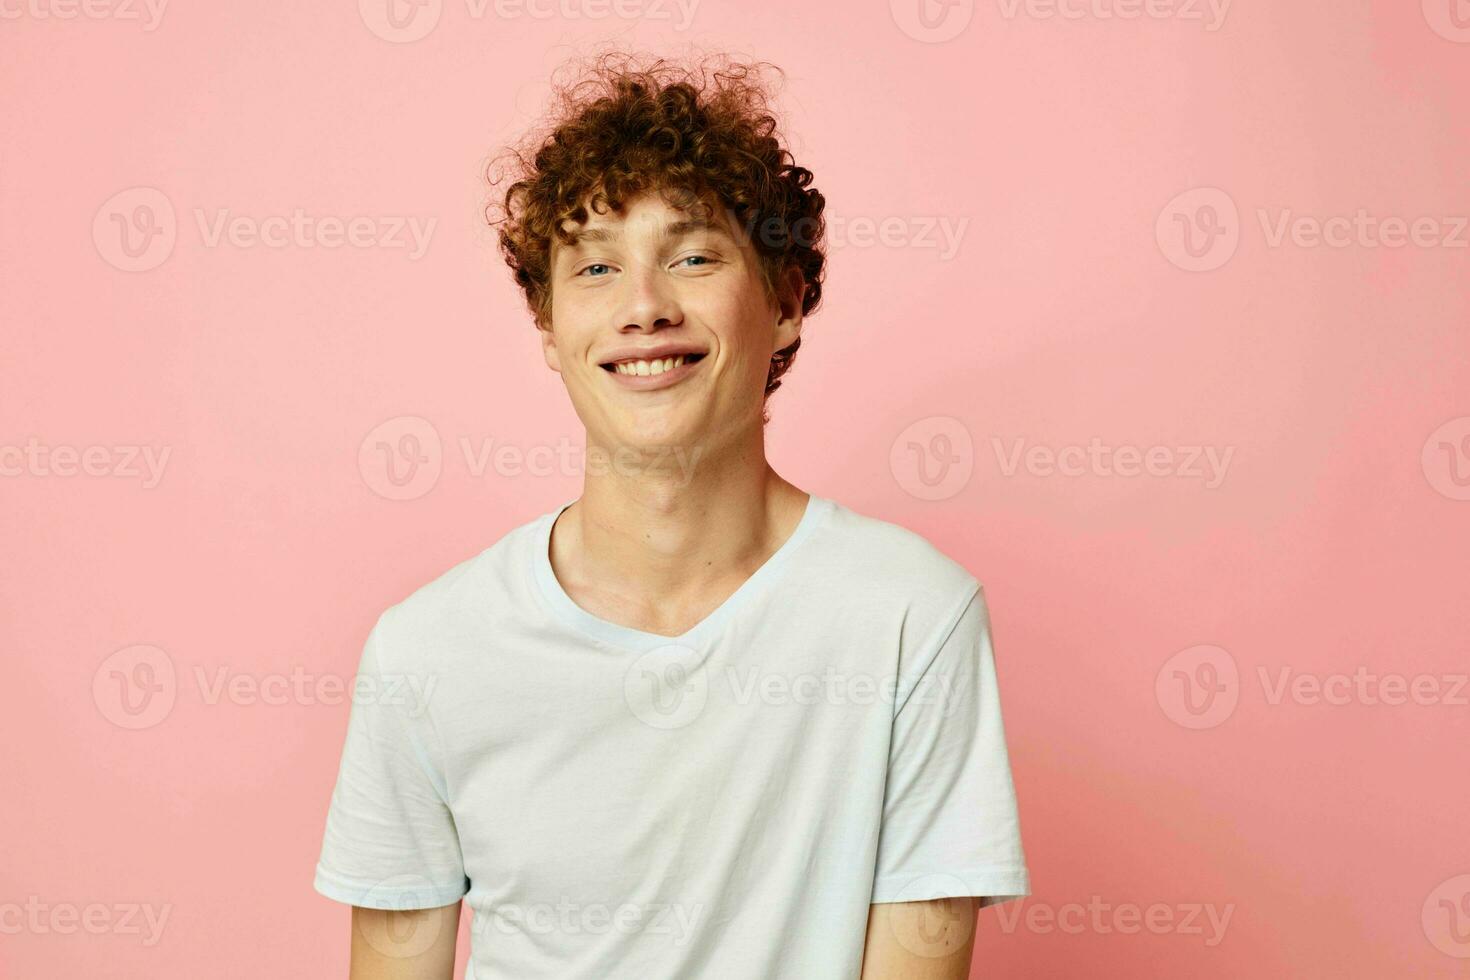 retrato do uma jovem encaracolado homem dentro branco camiseta casual vestem emoções Rosa fundo inalterado foto